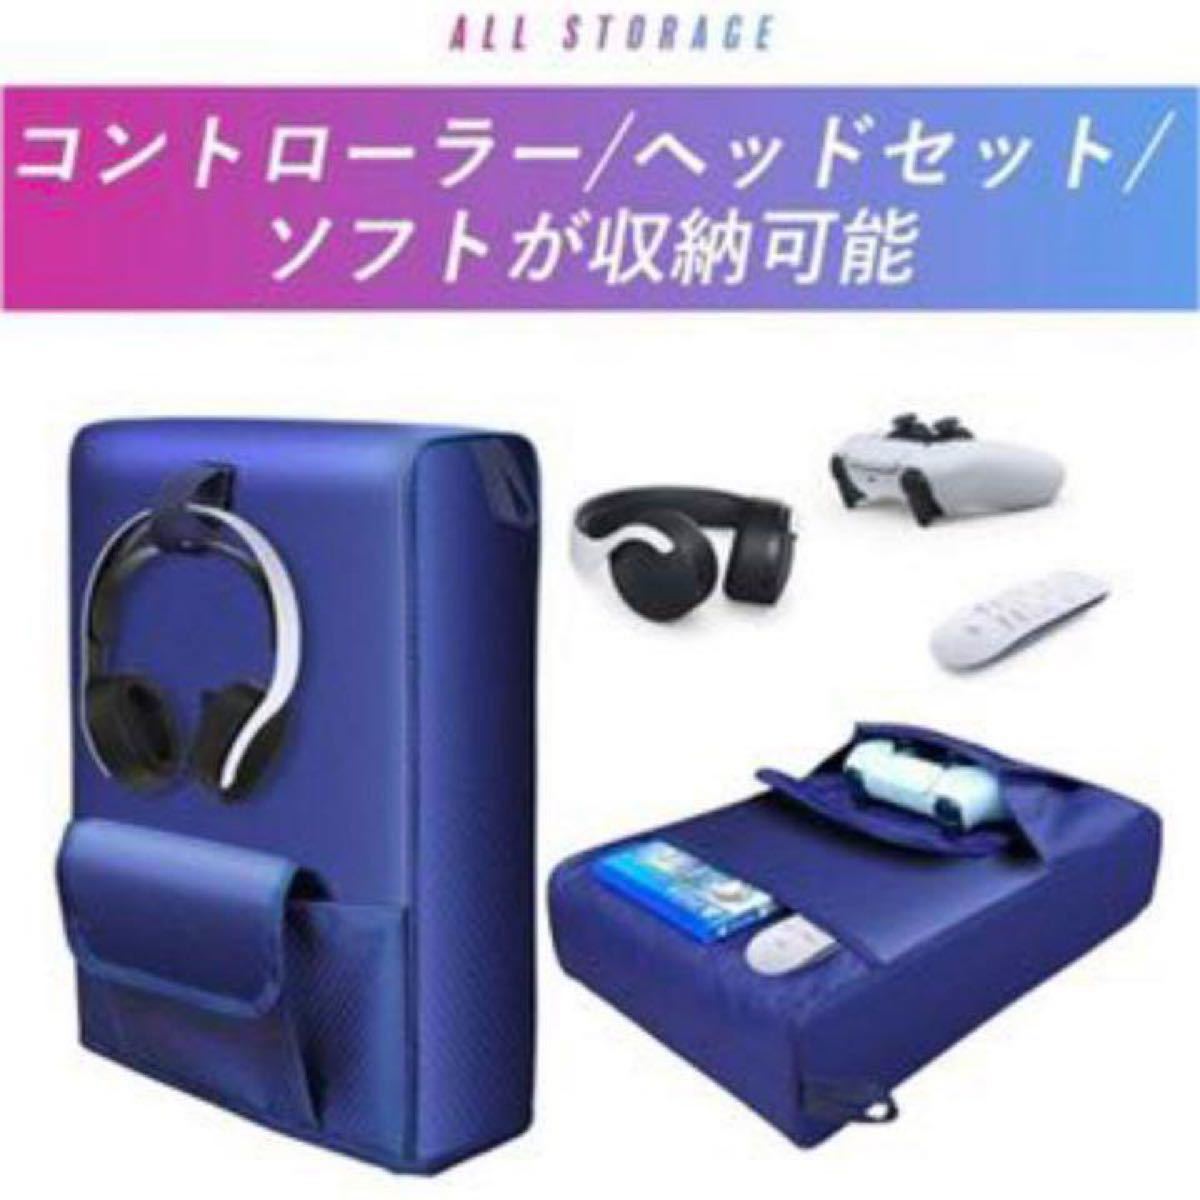 【大特価】 PS5本体カバー 防塵カバーPlaystation5 カバー